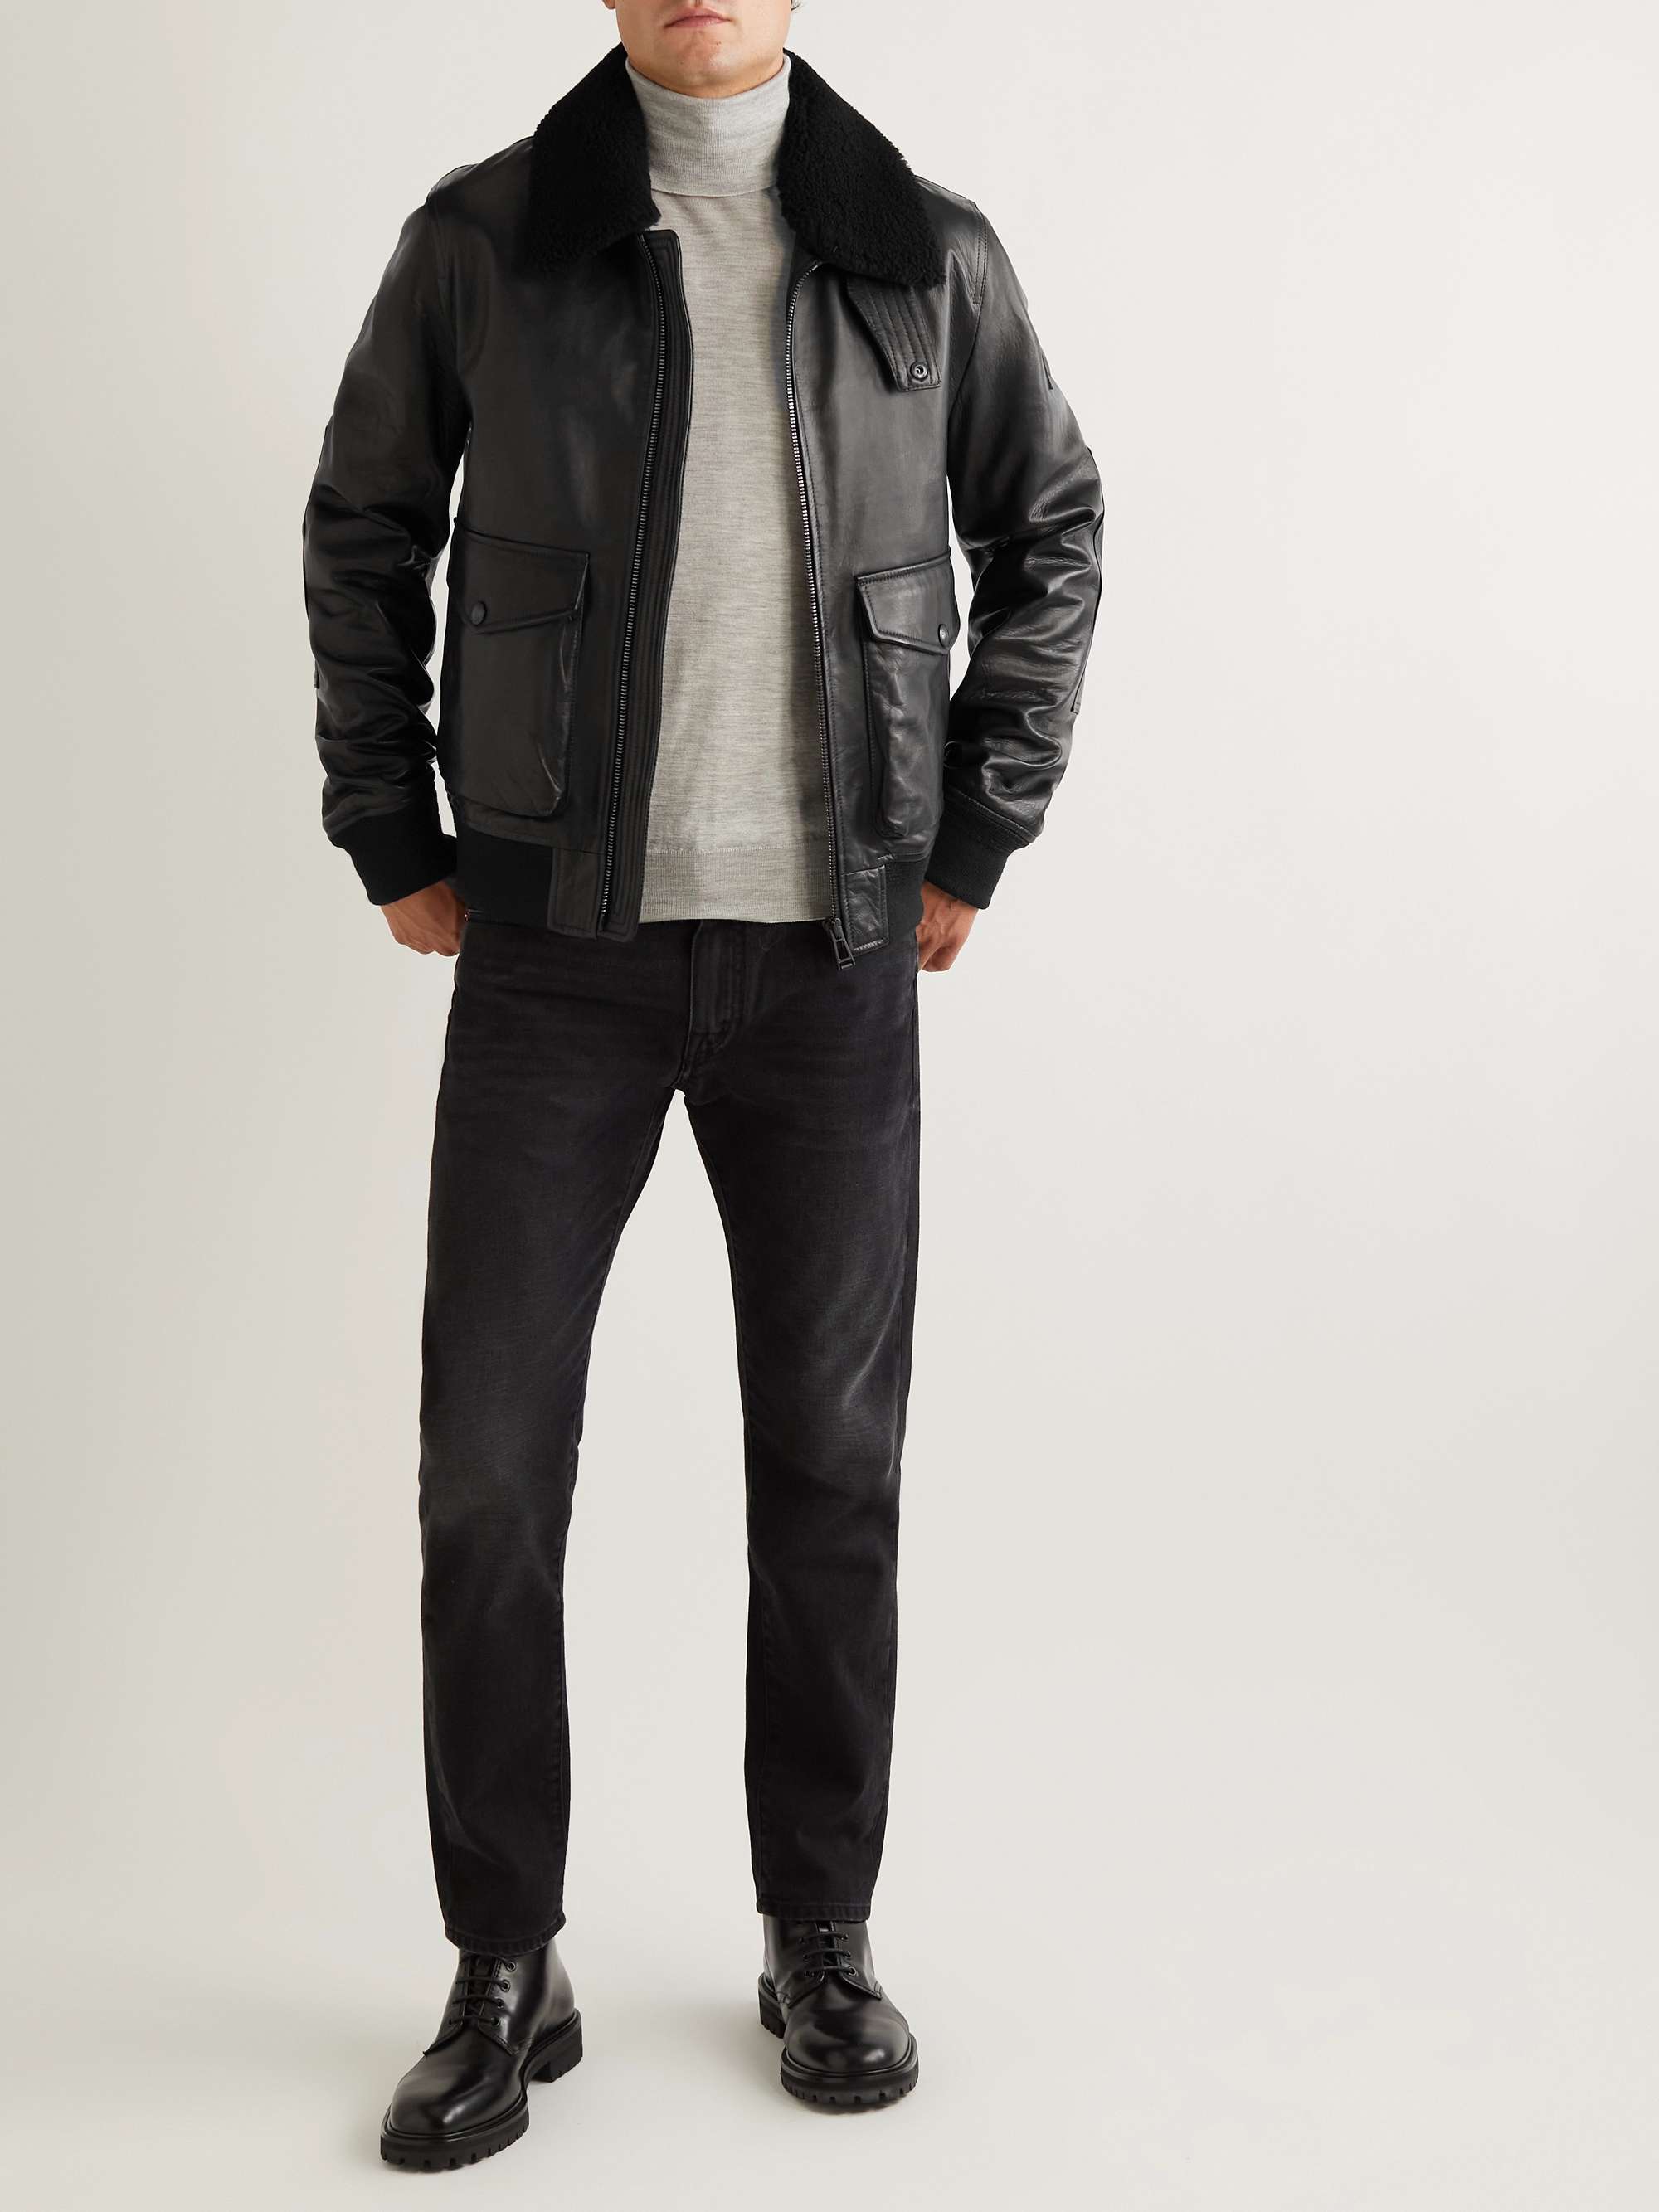 BELSTAFF Chart Shearling-Trimmed Leather Jacket for Men | MR PORTER